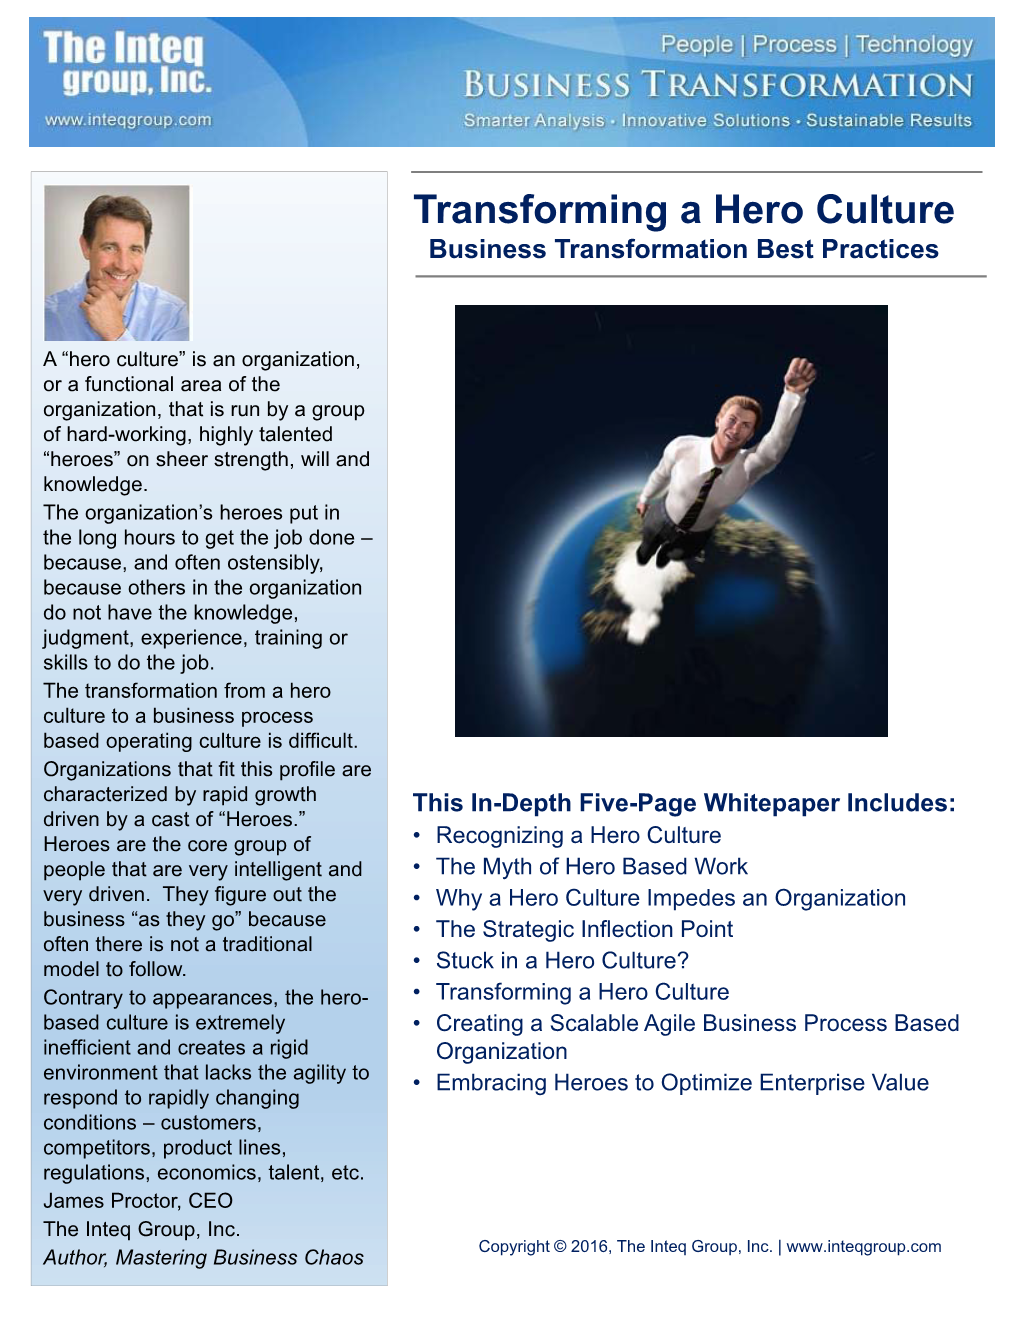 Transforming a Hero Culture Inteq Whitepaper